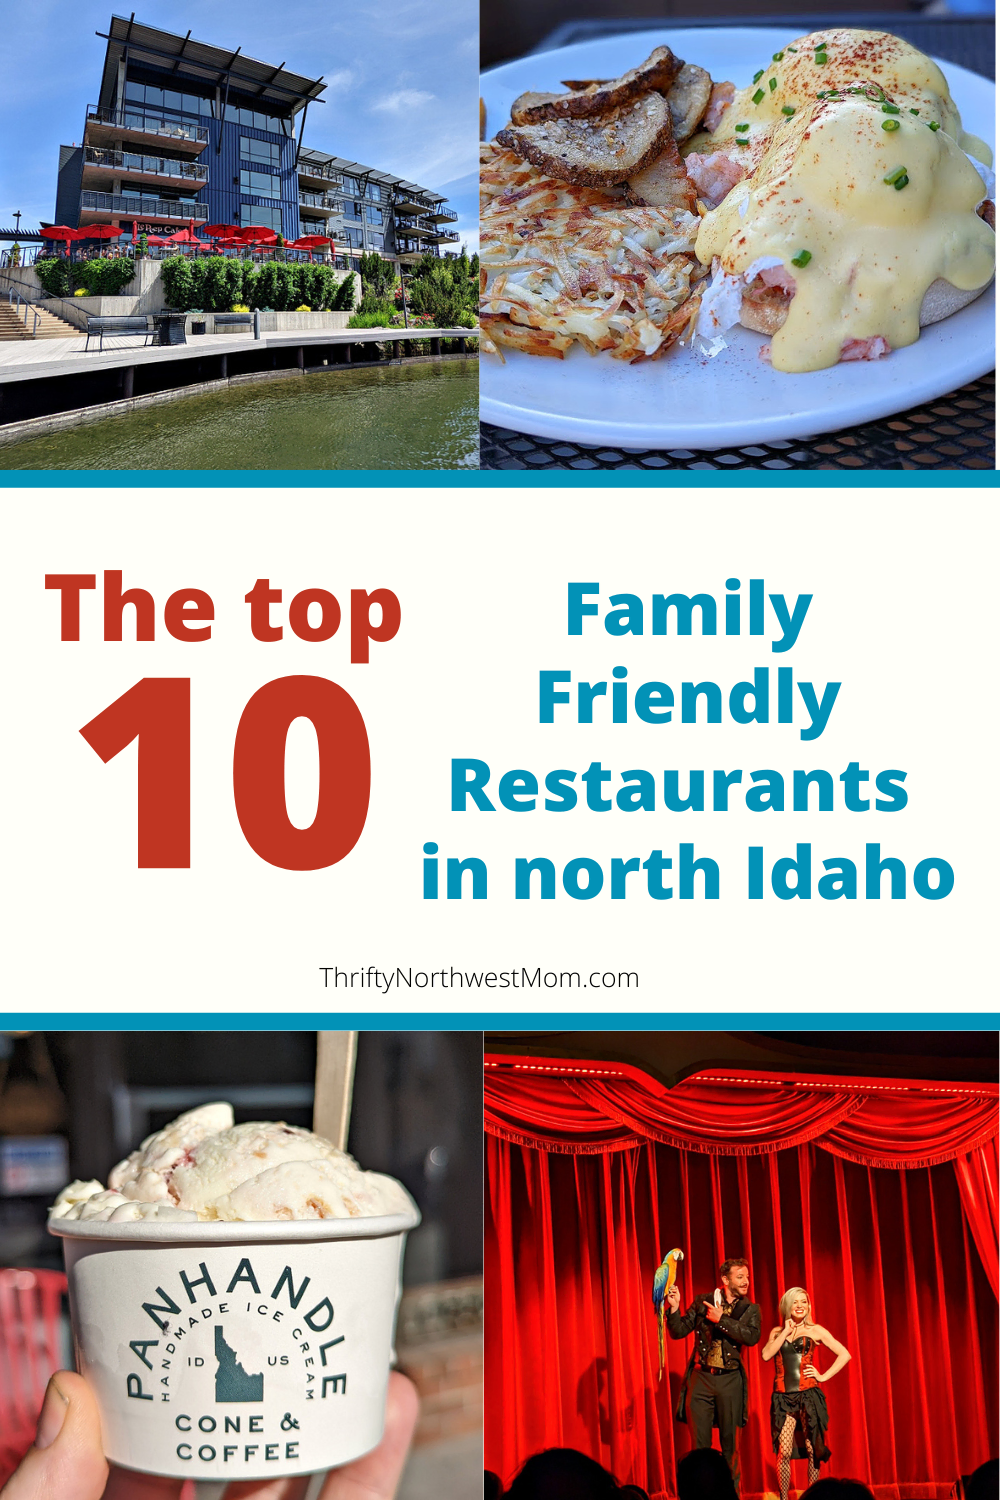 Family Friendly Restaurants in north Idaho